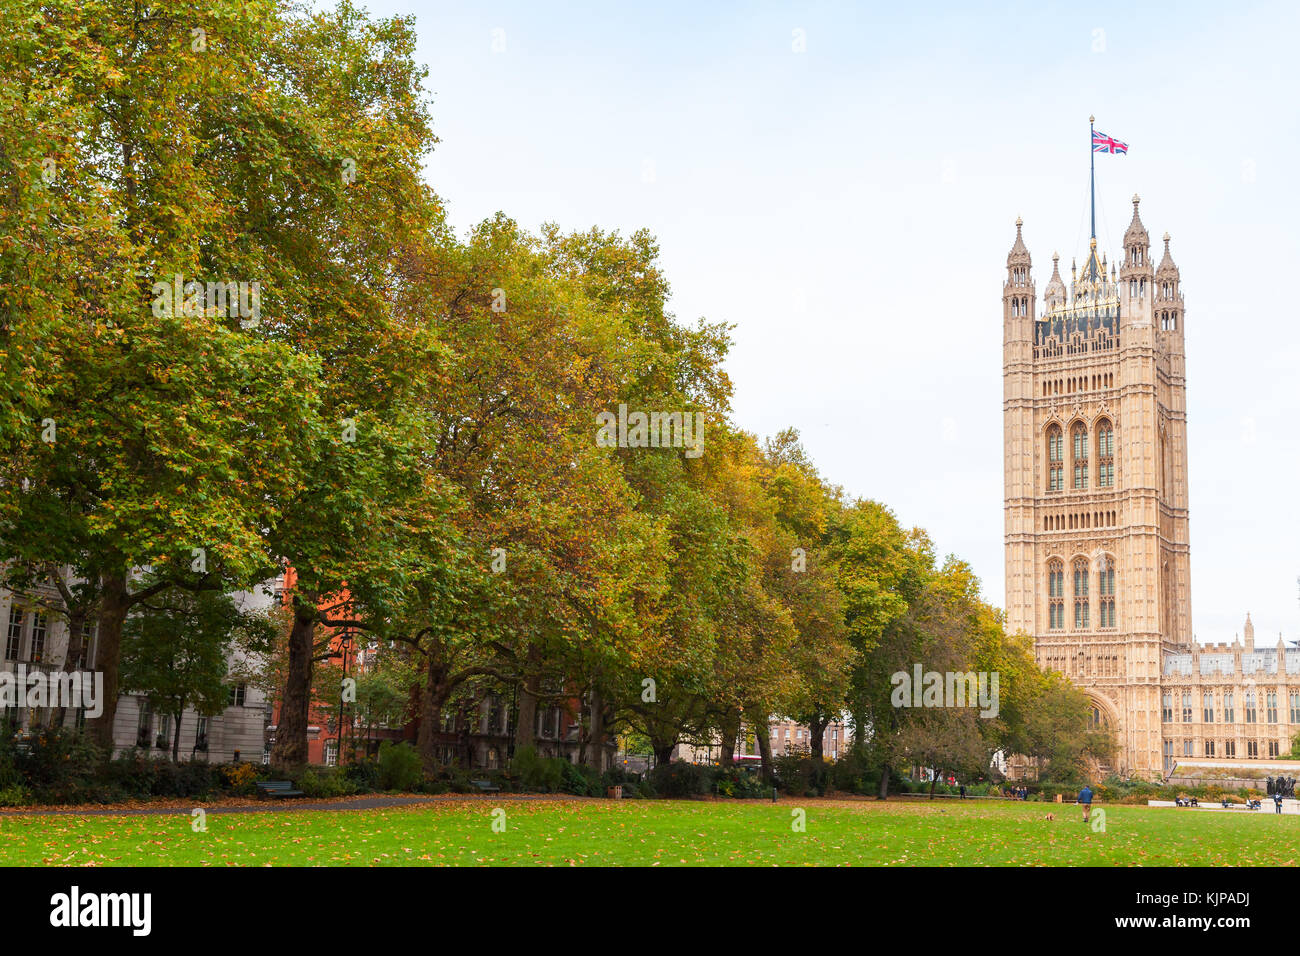 Victoria Tower, quadratischen Turm an der süd-west end im Palast von Westminster in London, Großbritannien. Blick vom Victoria Tower Gardens Stockfoto